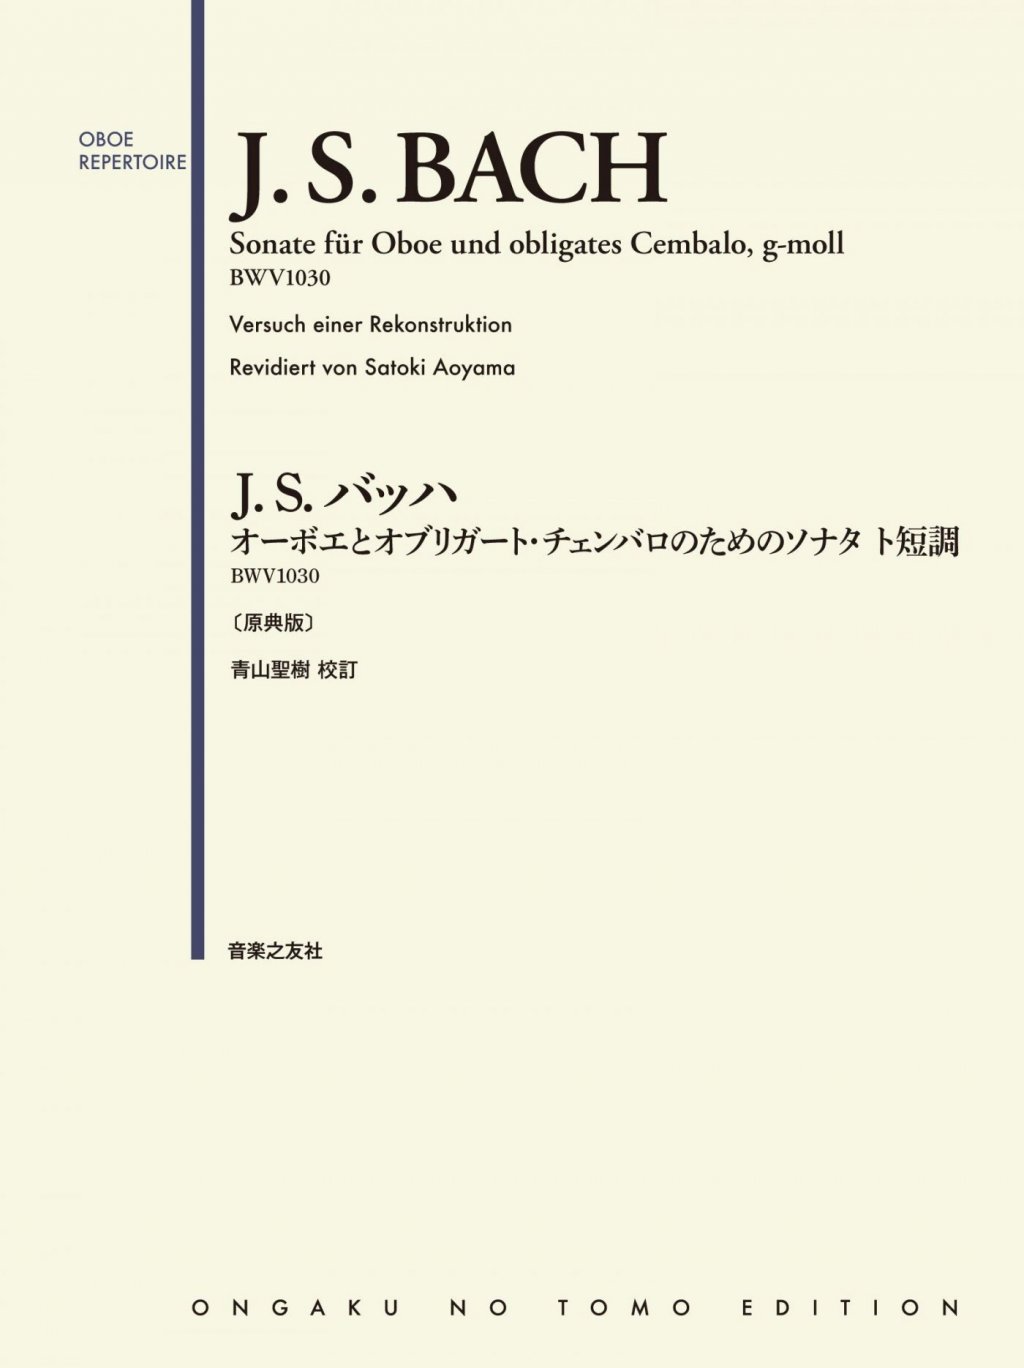 「J.S.バッハ ：オーボエとオブリガート・チェンバロのためのソナタ ト短調 BWV1030 〔原典版〕」青山 聖樹 画像 1